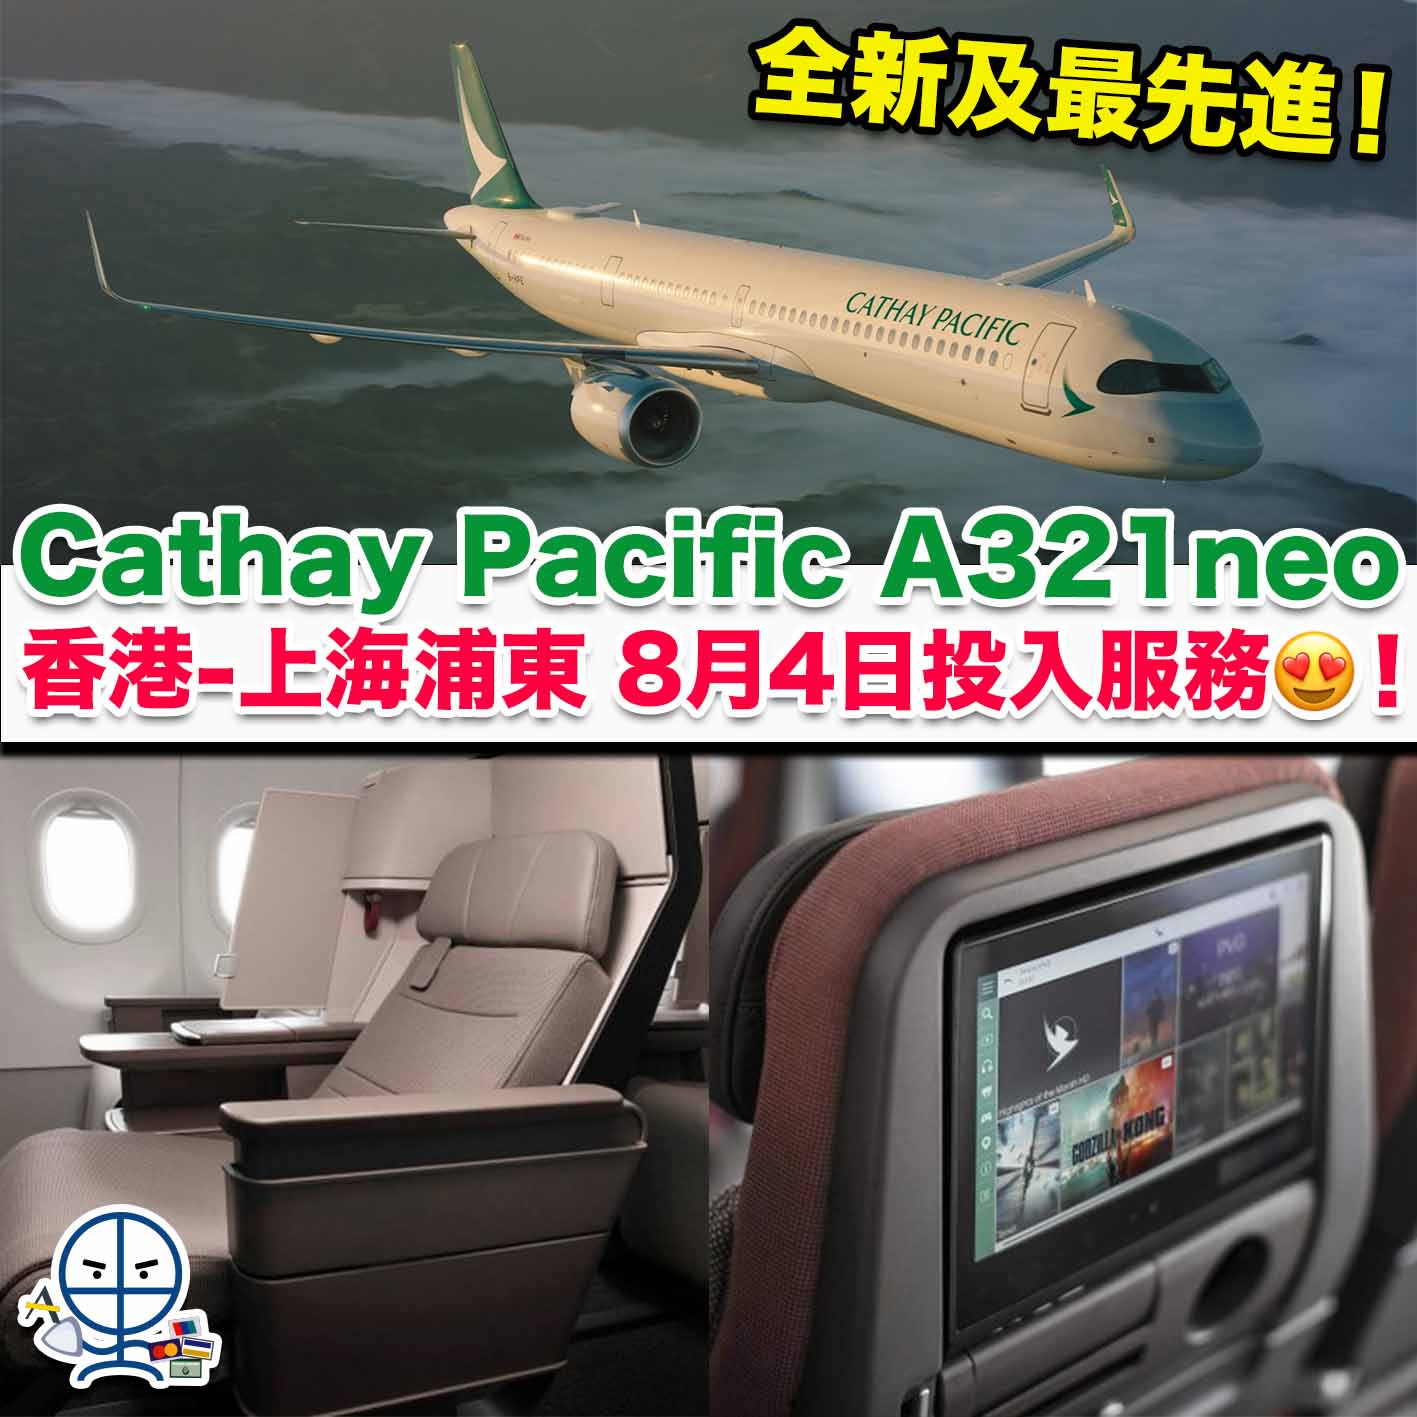 國泰A321neo-Cathay Pacific A321neo